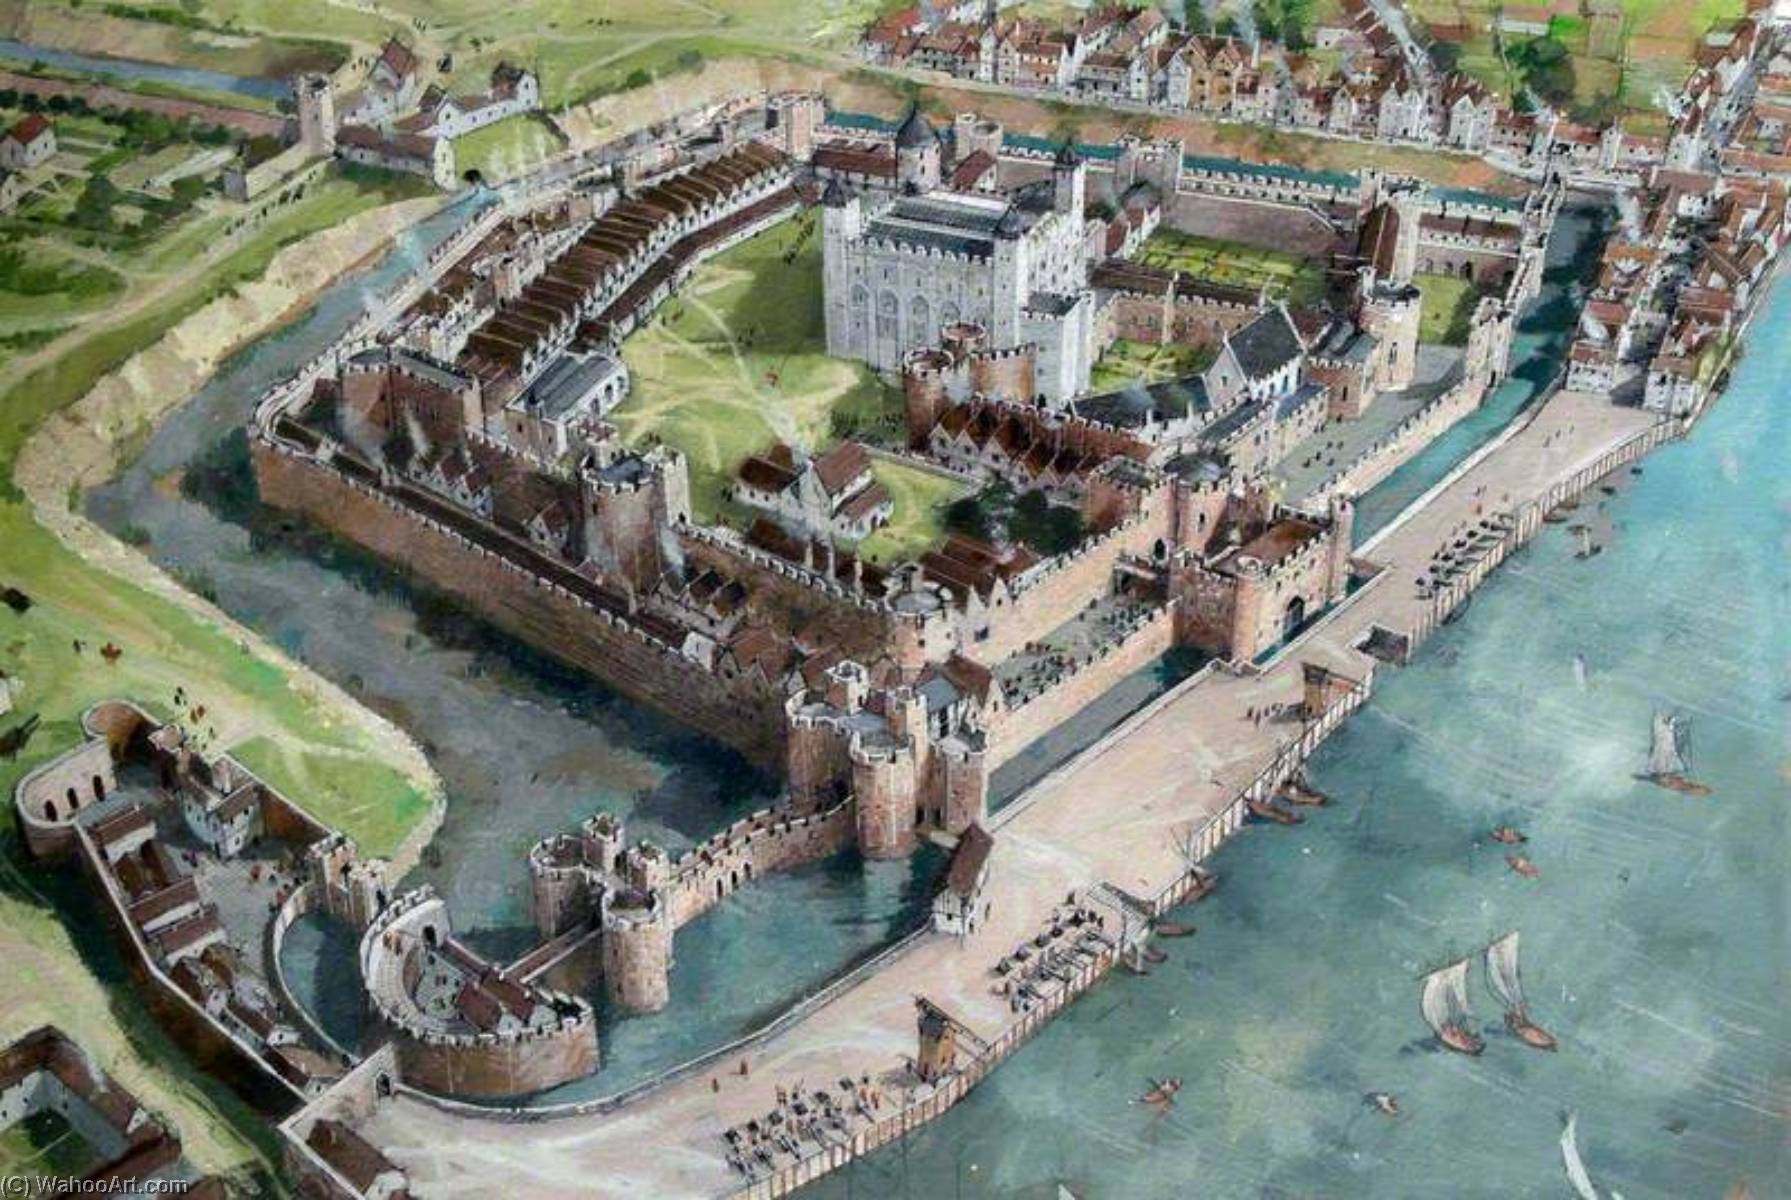 A century of being around. Средневековый замок Тауэр. The Tower of London в 1066 году. Англия крепость Тауэр 11 века. Замки средневековья Лондонский Тауэр.